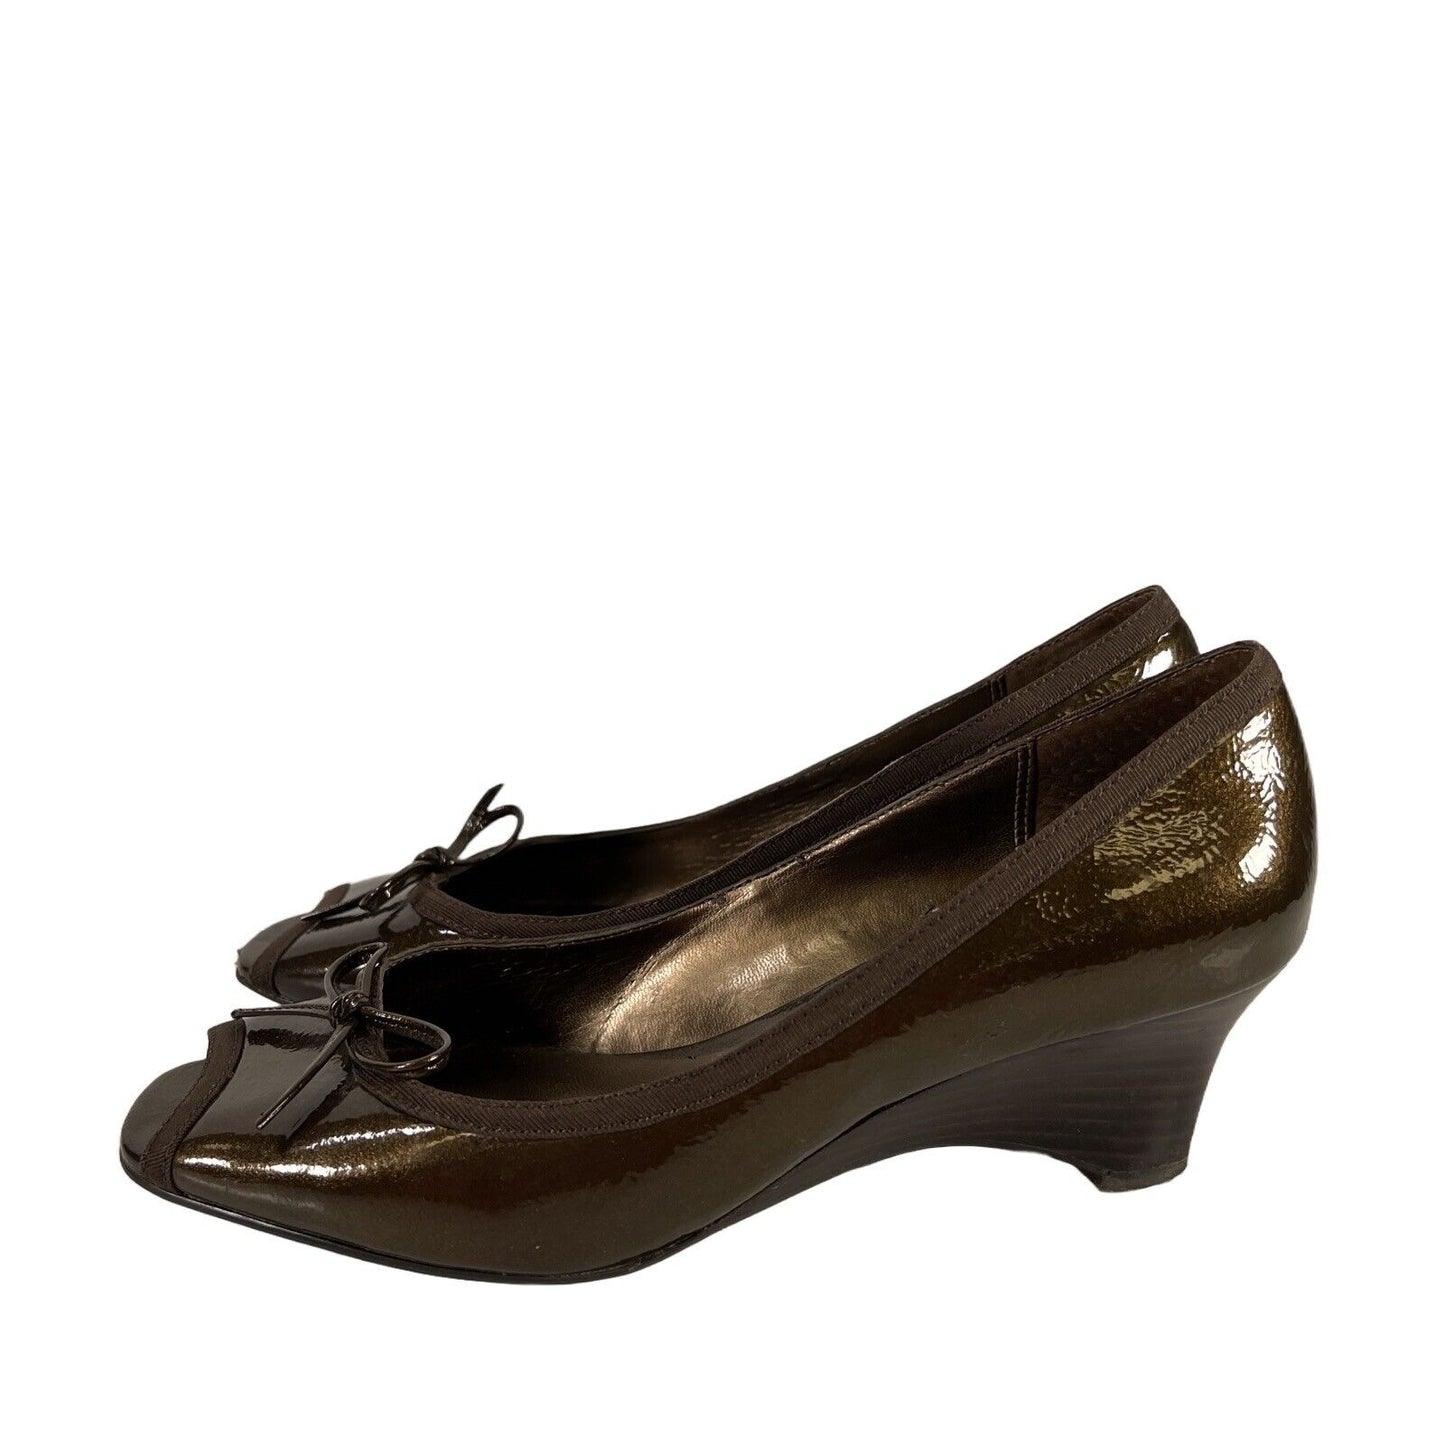 Coldwater Creek Women's Bronze Peep Toe Low Heels - 6.5